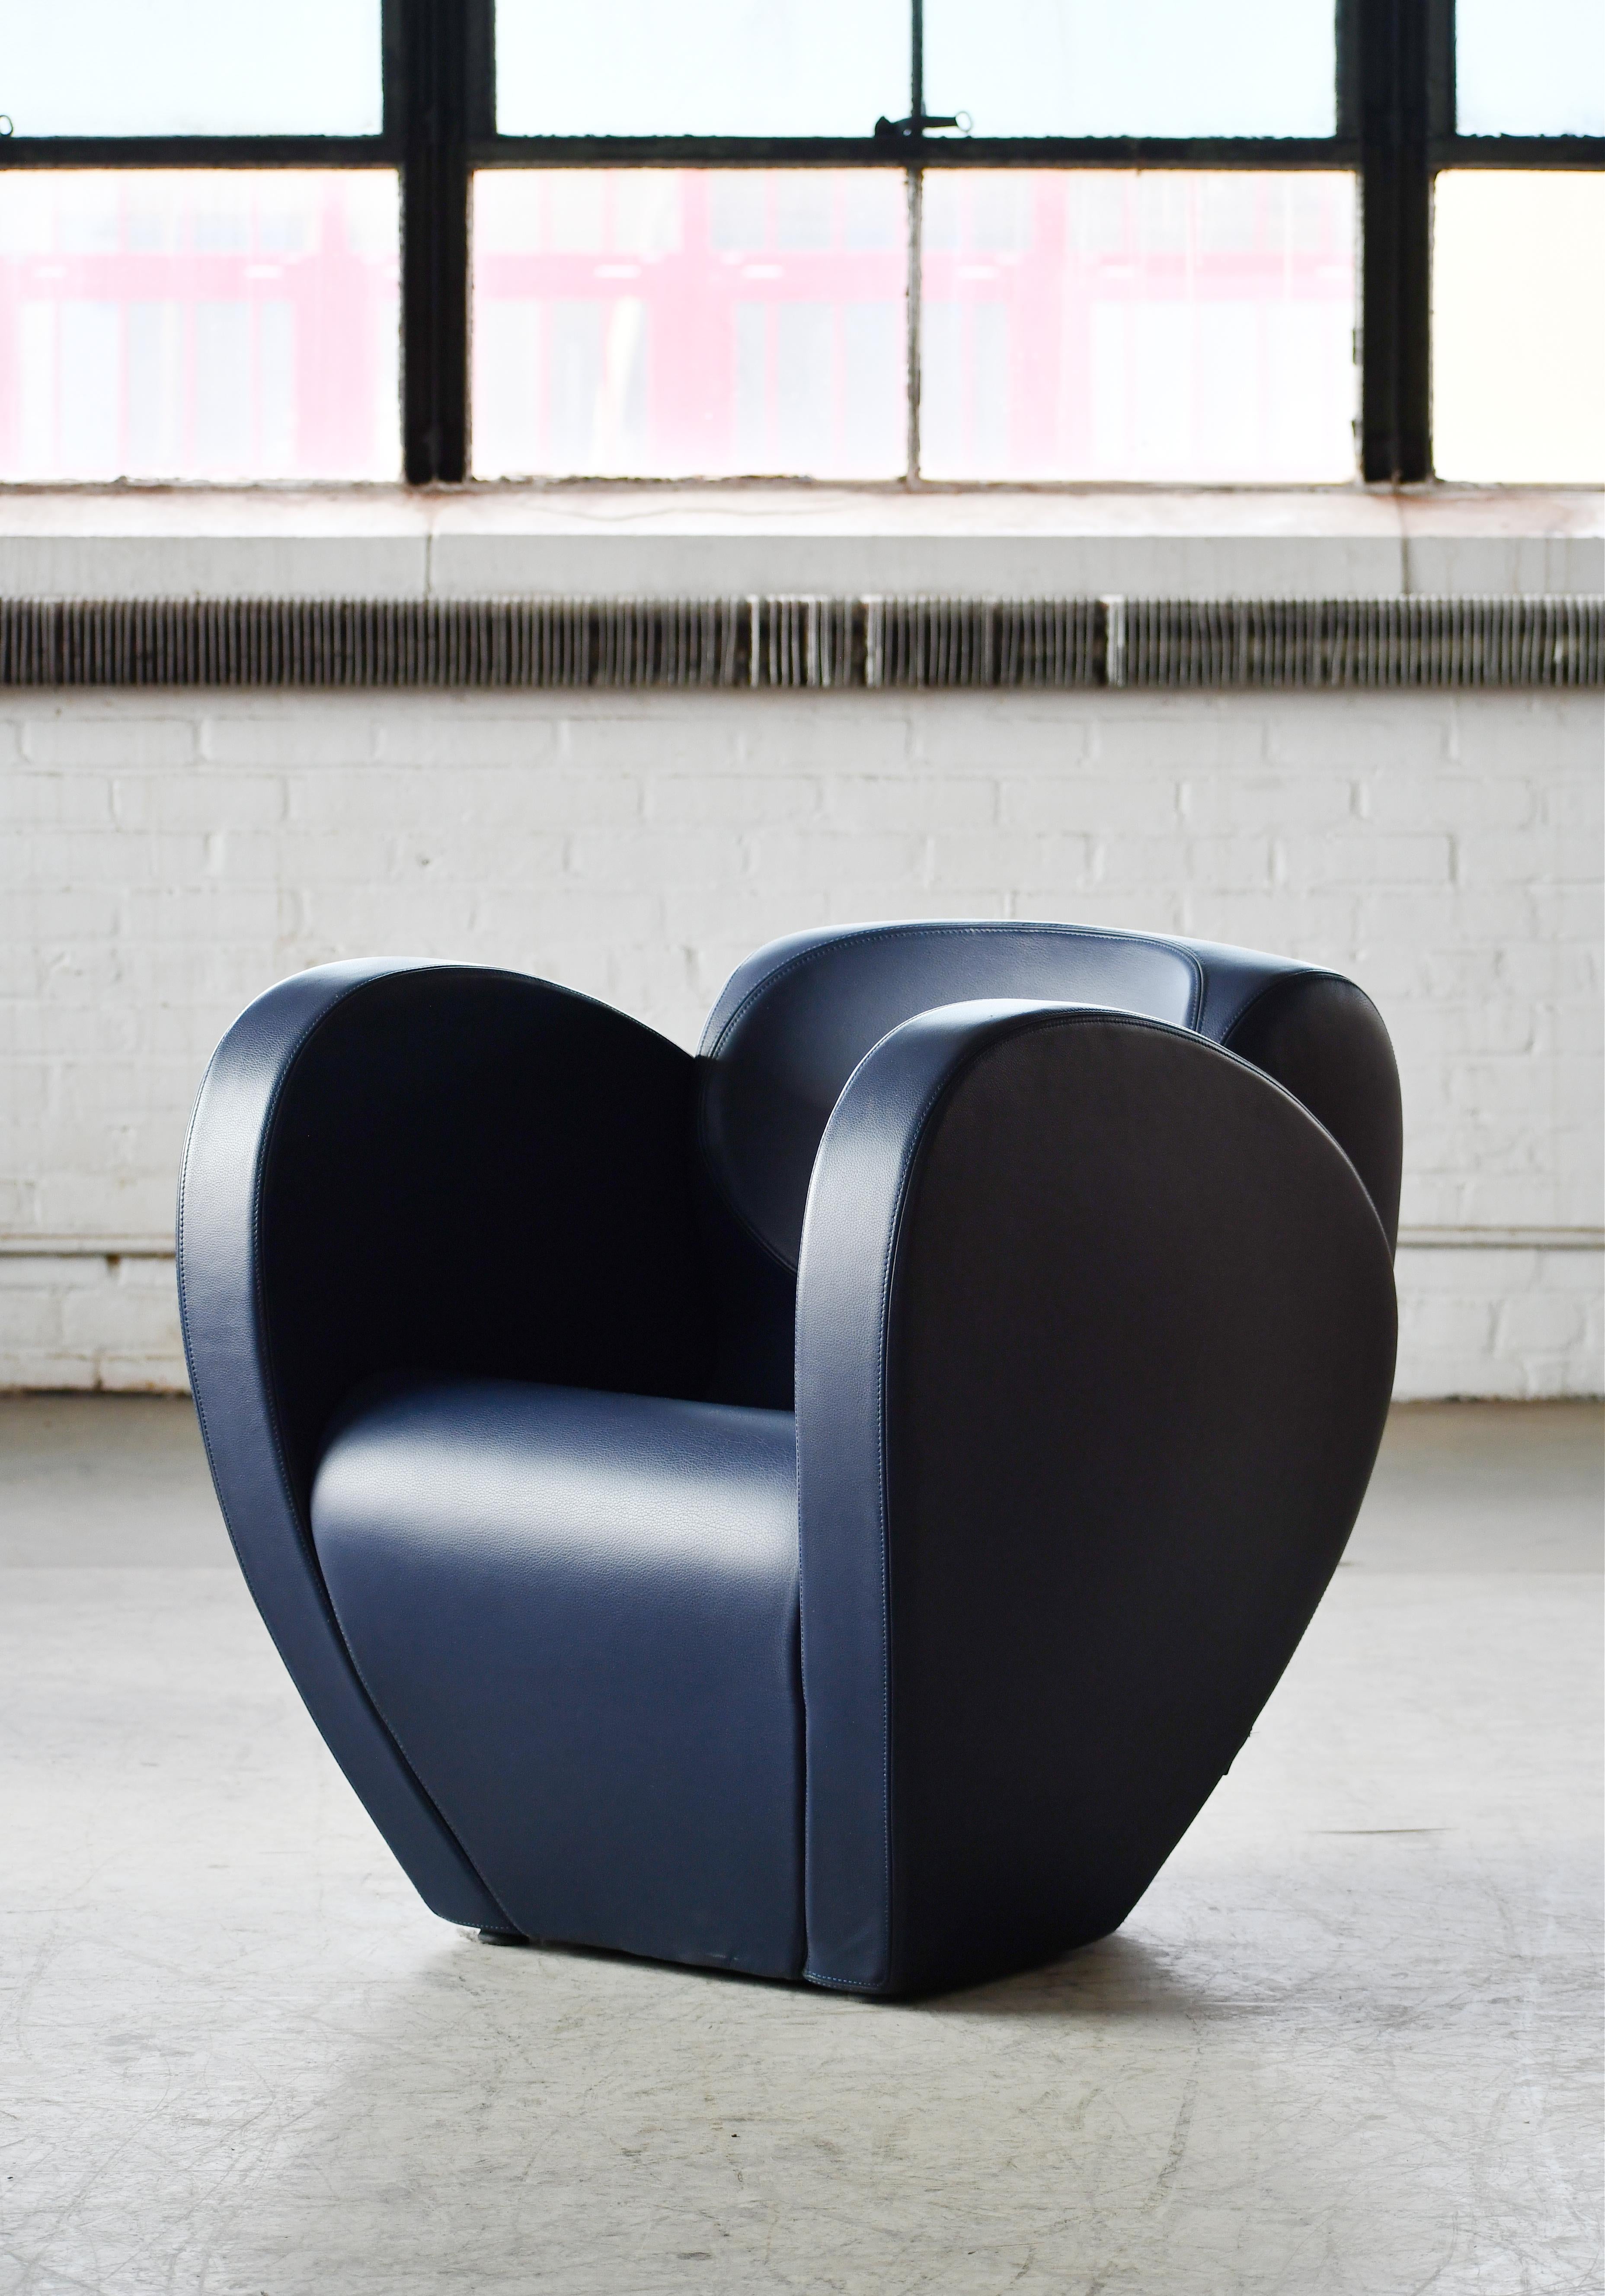 Cet étonnant fauteuil de la collection Spring a été conçu par le célèbre Ron Arad sous le nom de Model 10 en 1991 pour la société italienne Moroso. Structure recouverte de mousse de polyuréthane et d'un cuir bleu souple. Des lignes extraordinaires